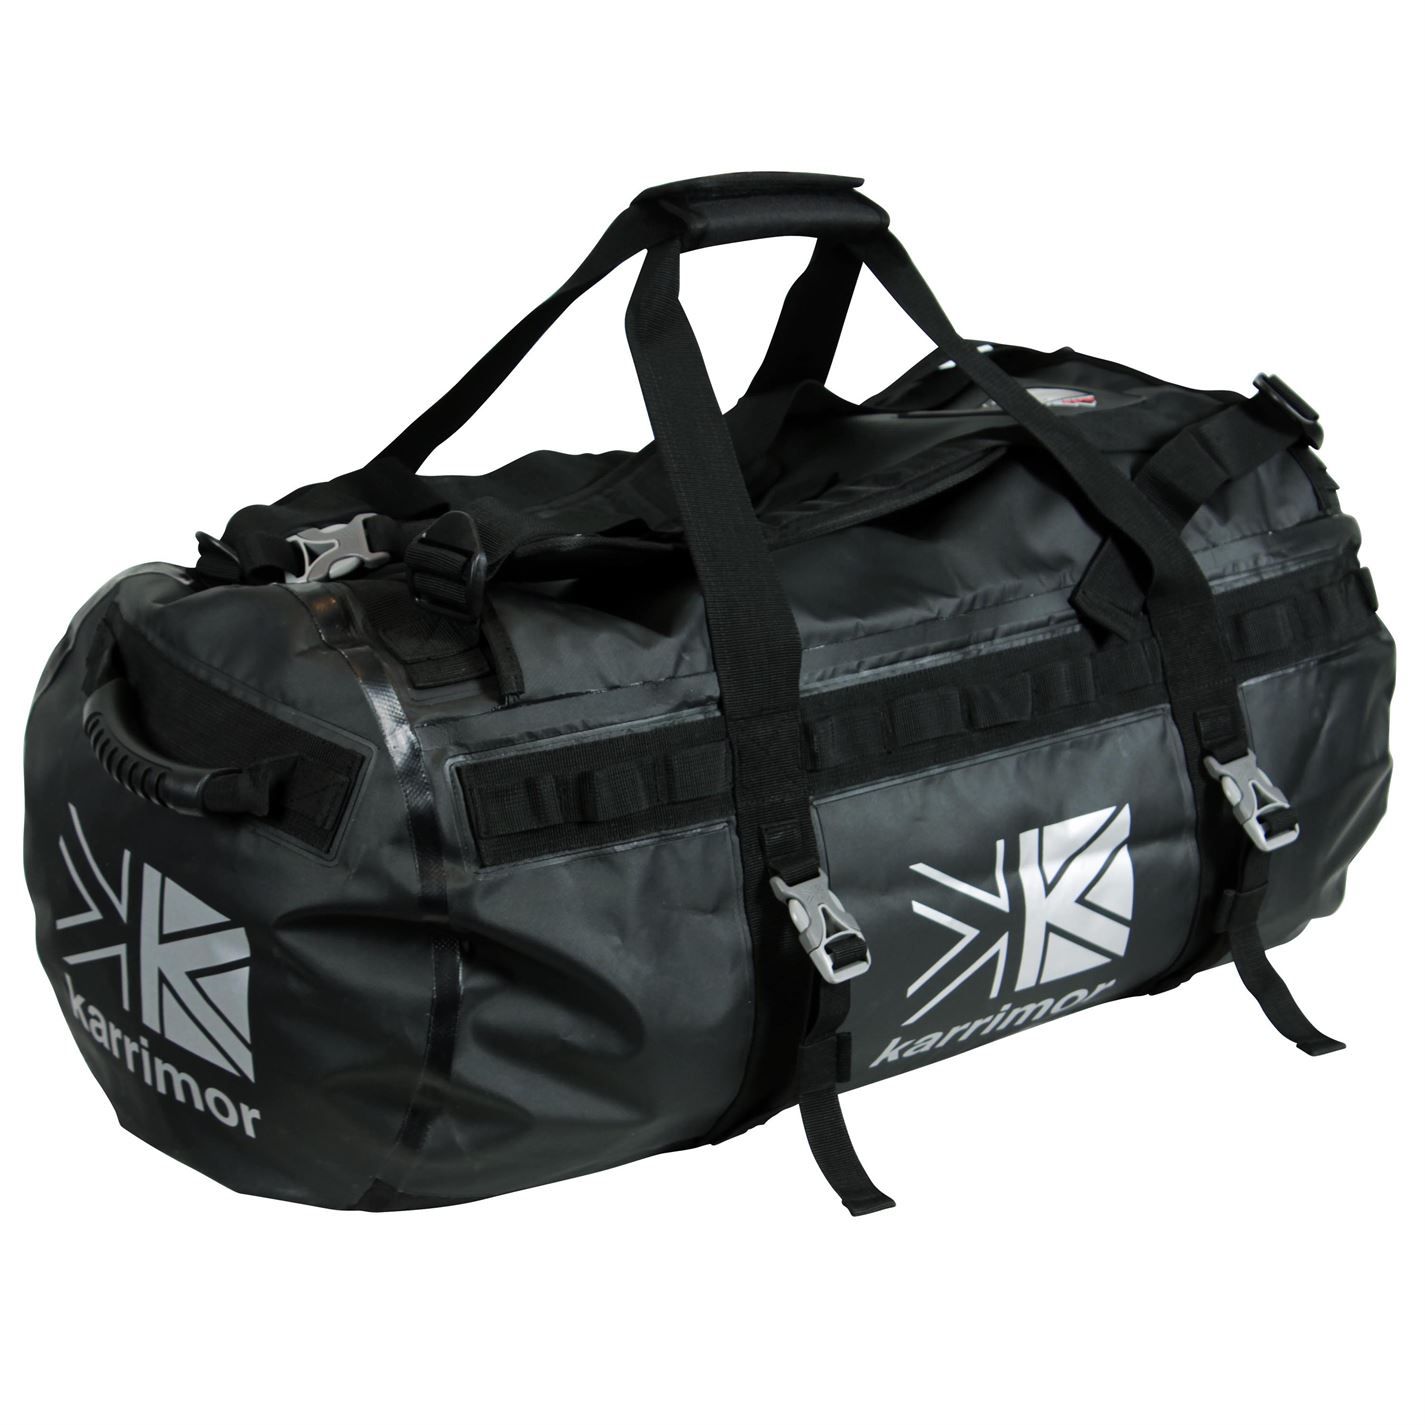 Karrimor 90L Duffle Bag Adjustable Shoulder Straps Padded Carry Handle Zipped